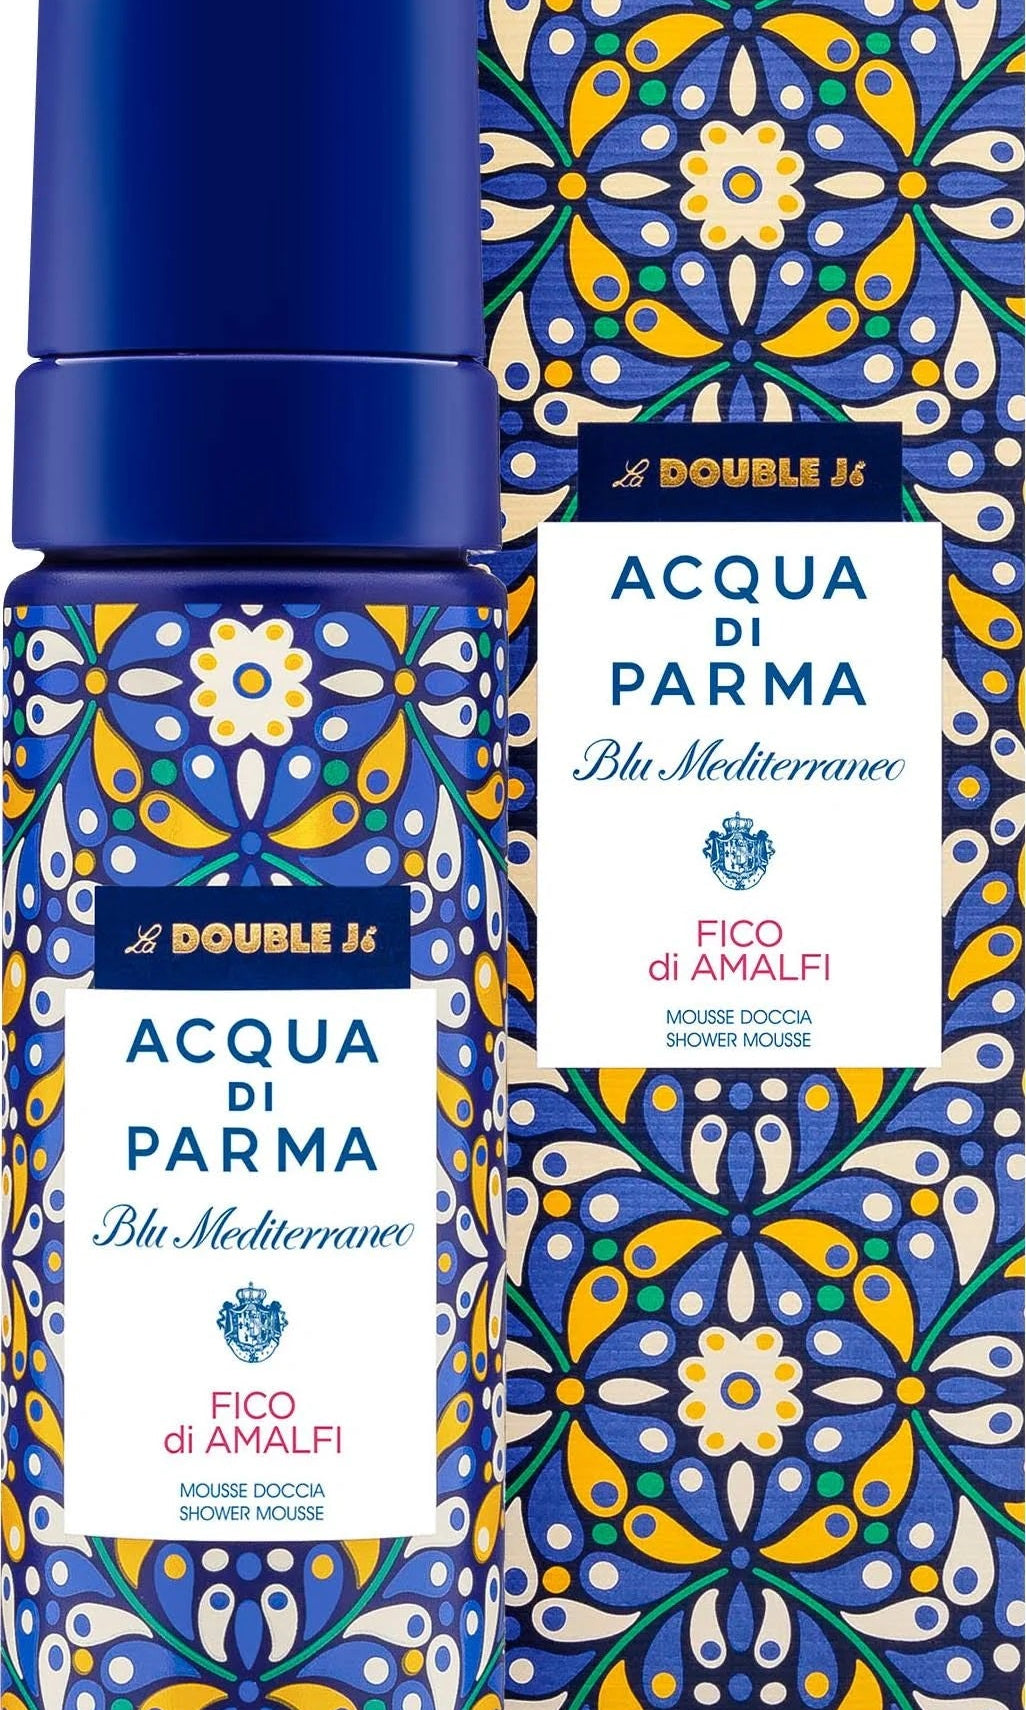 Acqua di Parma Blu Mediterraneo Fico di Amalfi 150ml Shower Mousse Grace Beauty